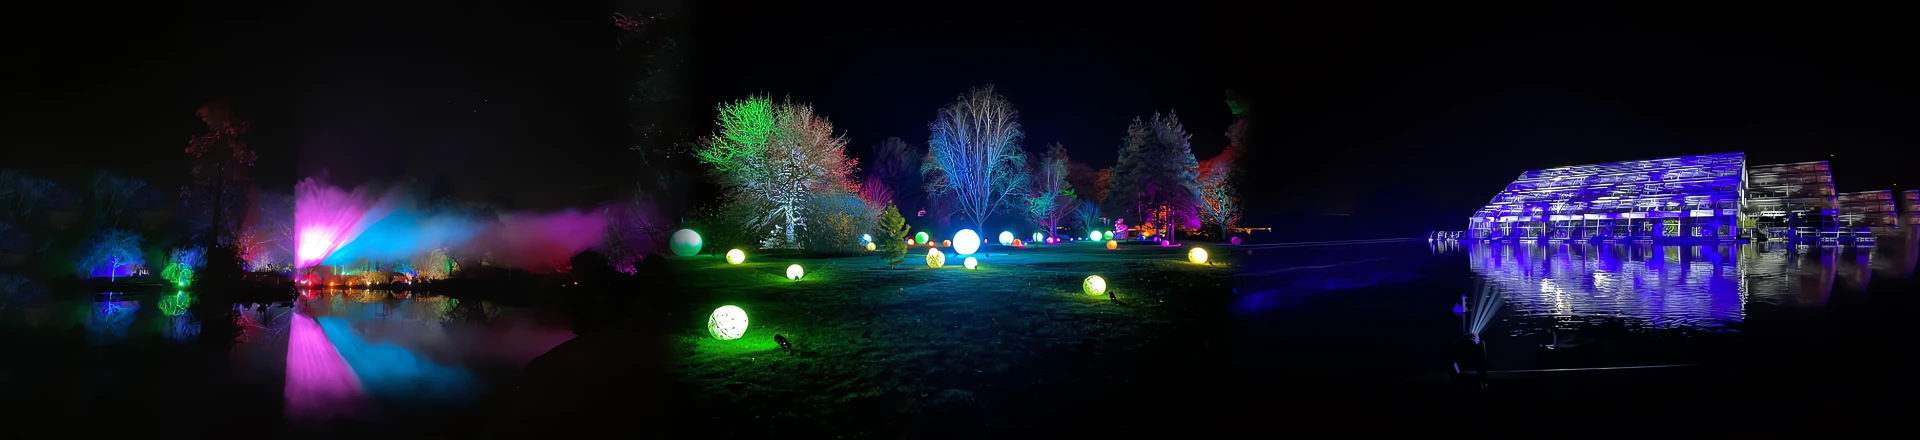 Ogrody wypełnione światłem dzięki ponad 500 reflektorom Cameo